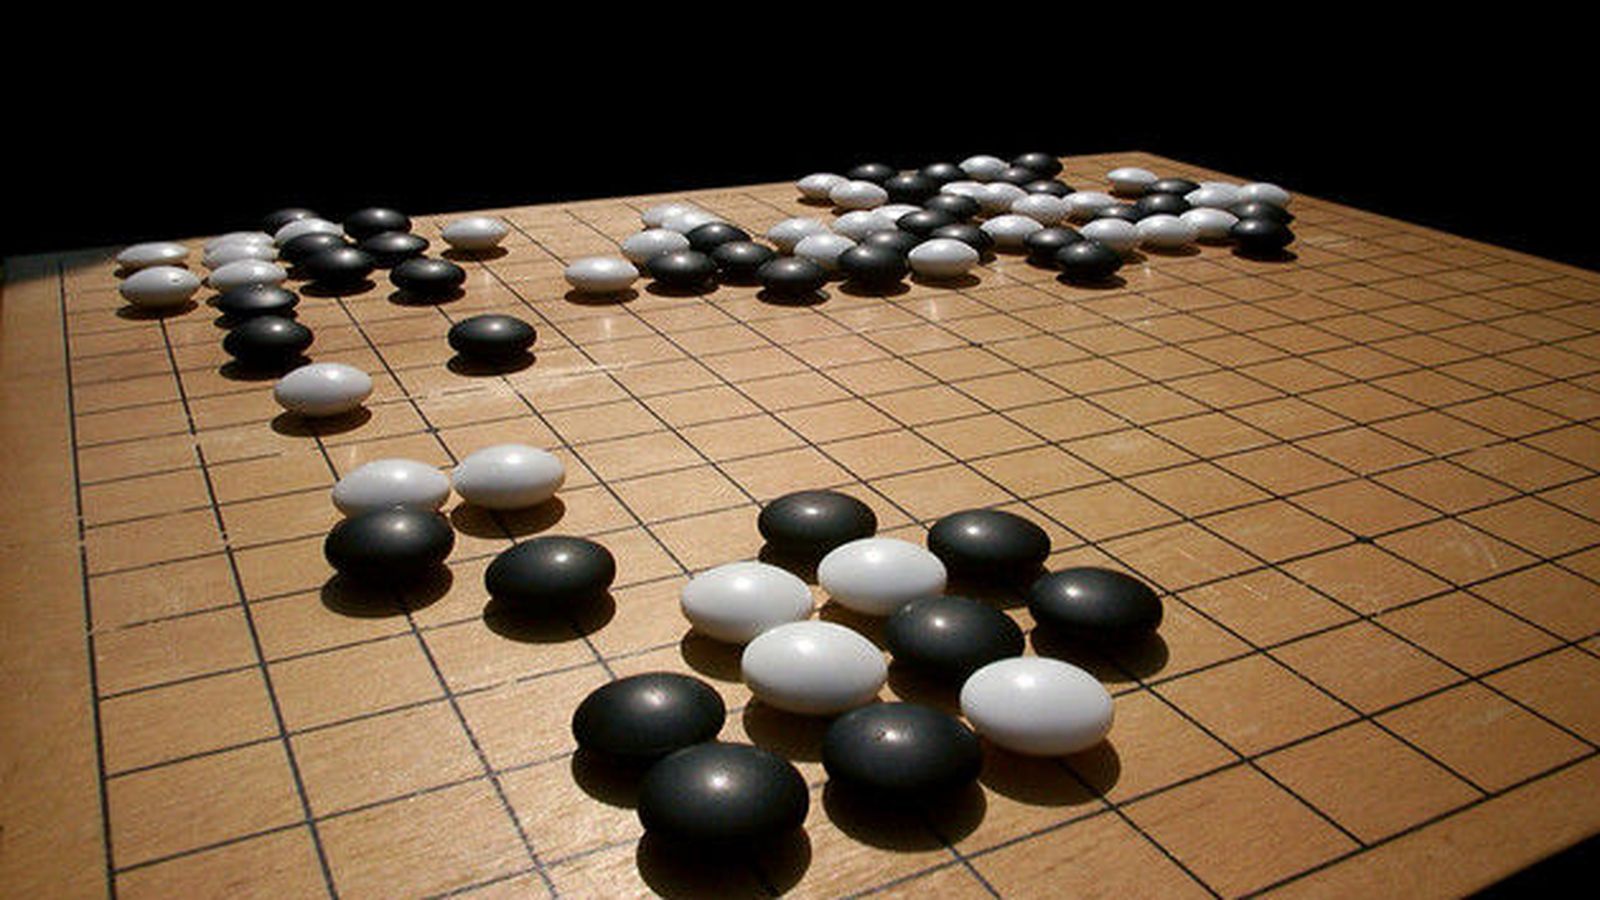 Foto: En el juego de Go dos jugadores colocan piezas en blanco y negro sobre una cuadrícula con el objetivo de ocupar más territorio que su oponente. / Imagen: Wikipedia